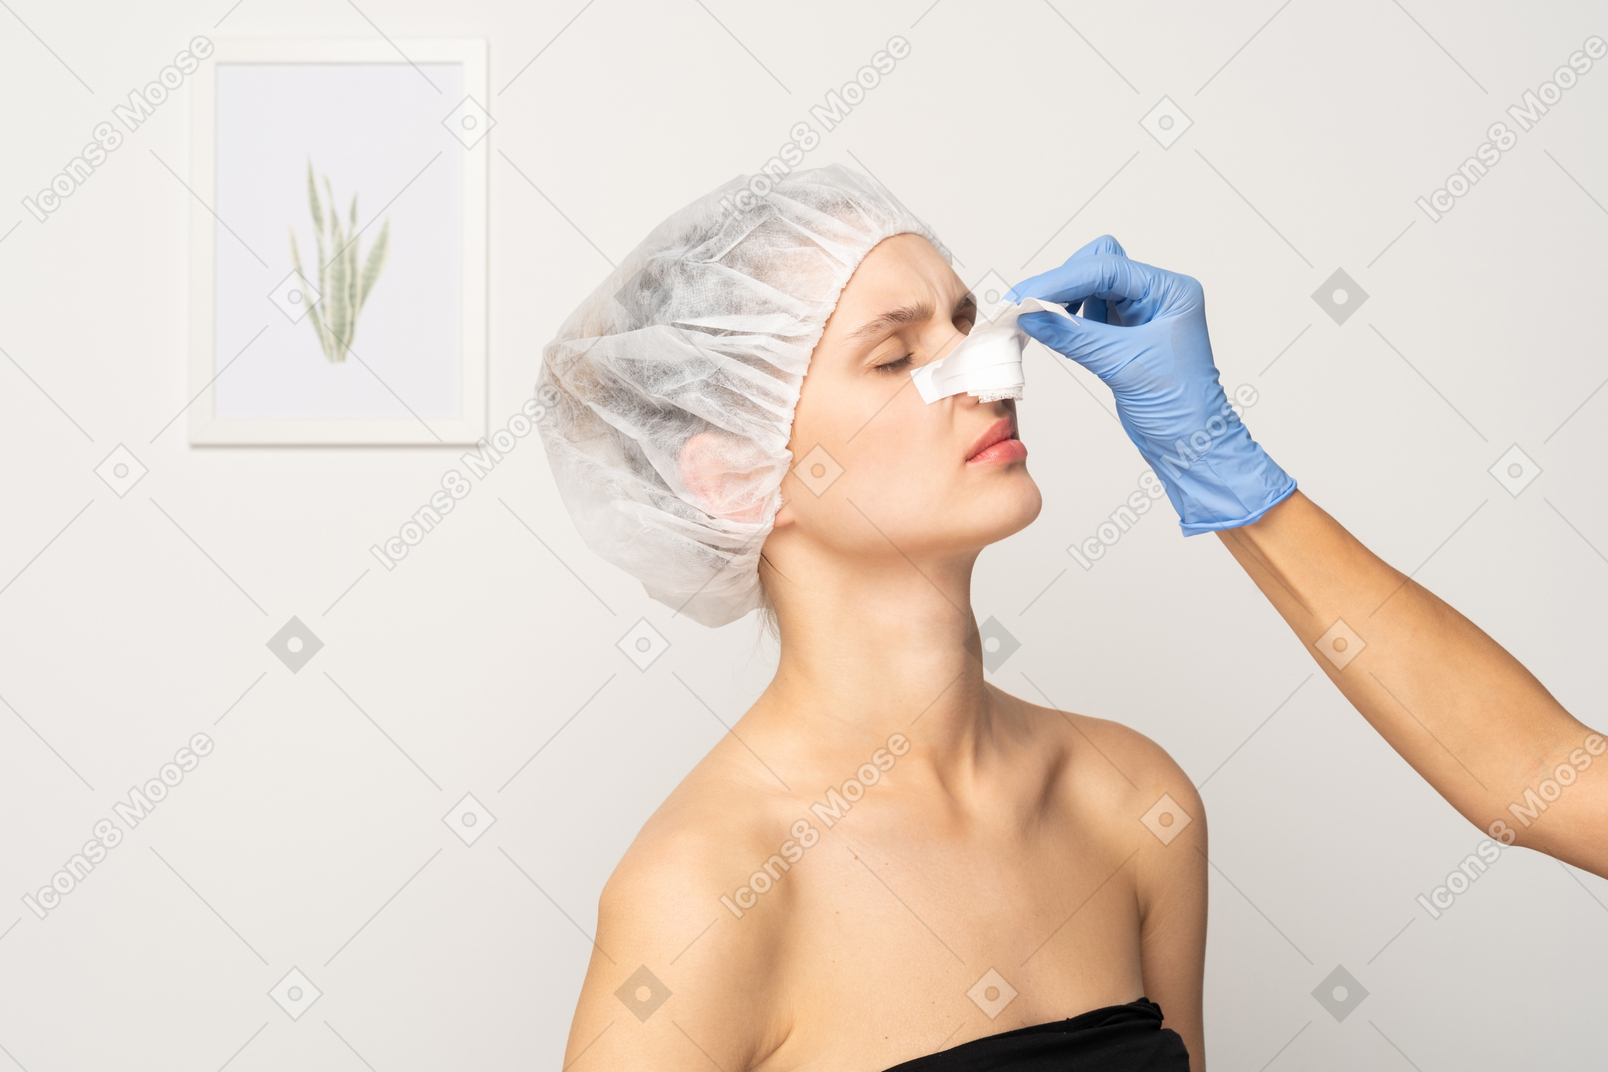 Medico che rimuove la fasciatura del naso della giovane donna